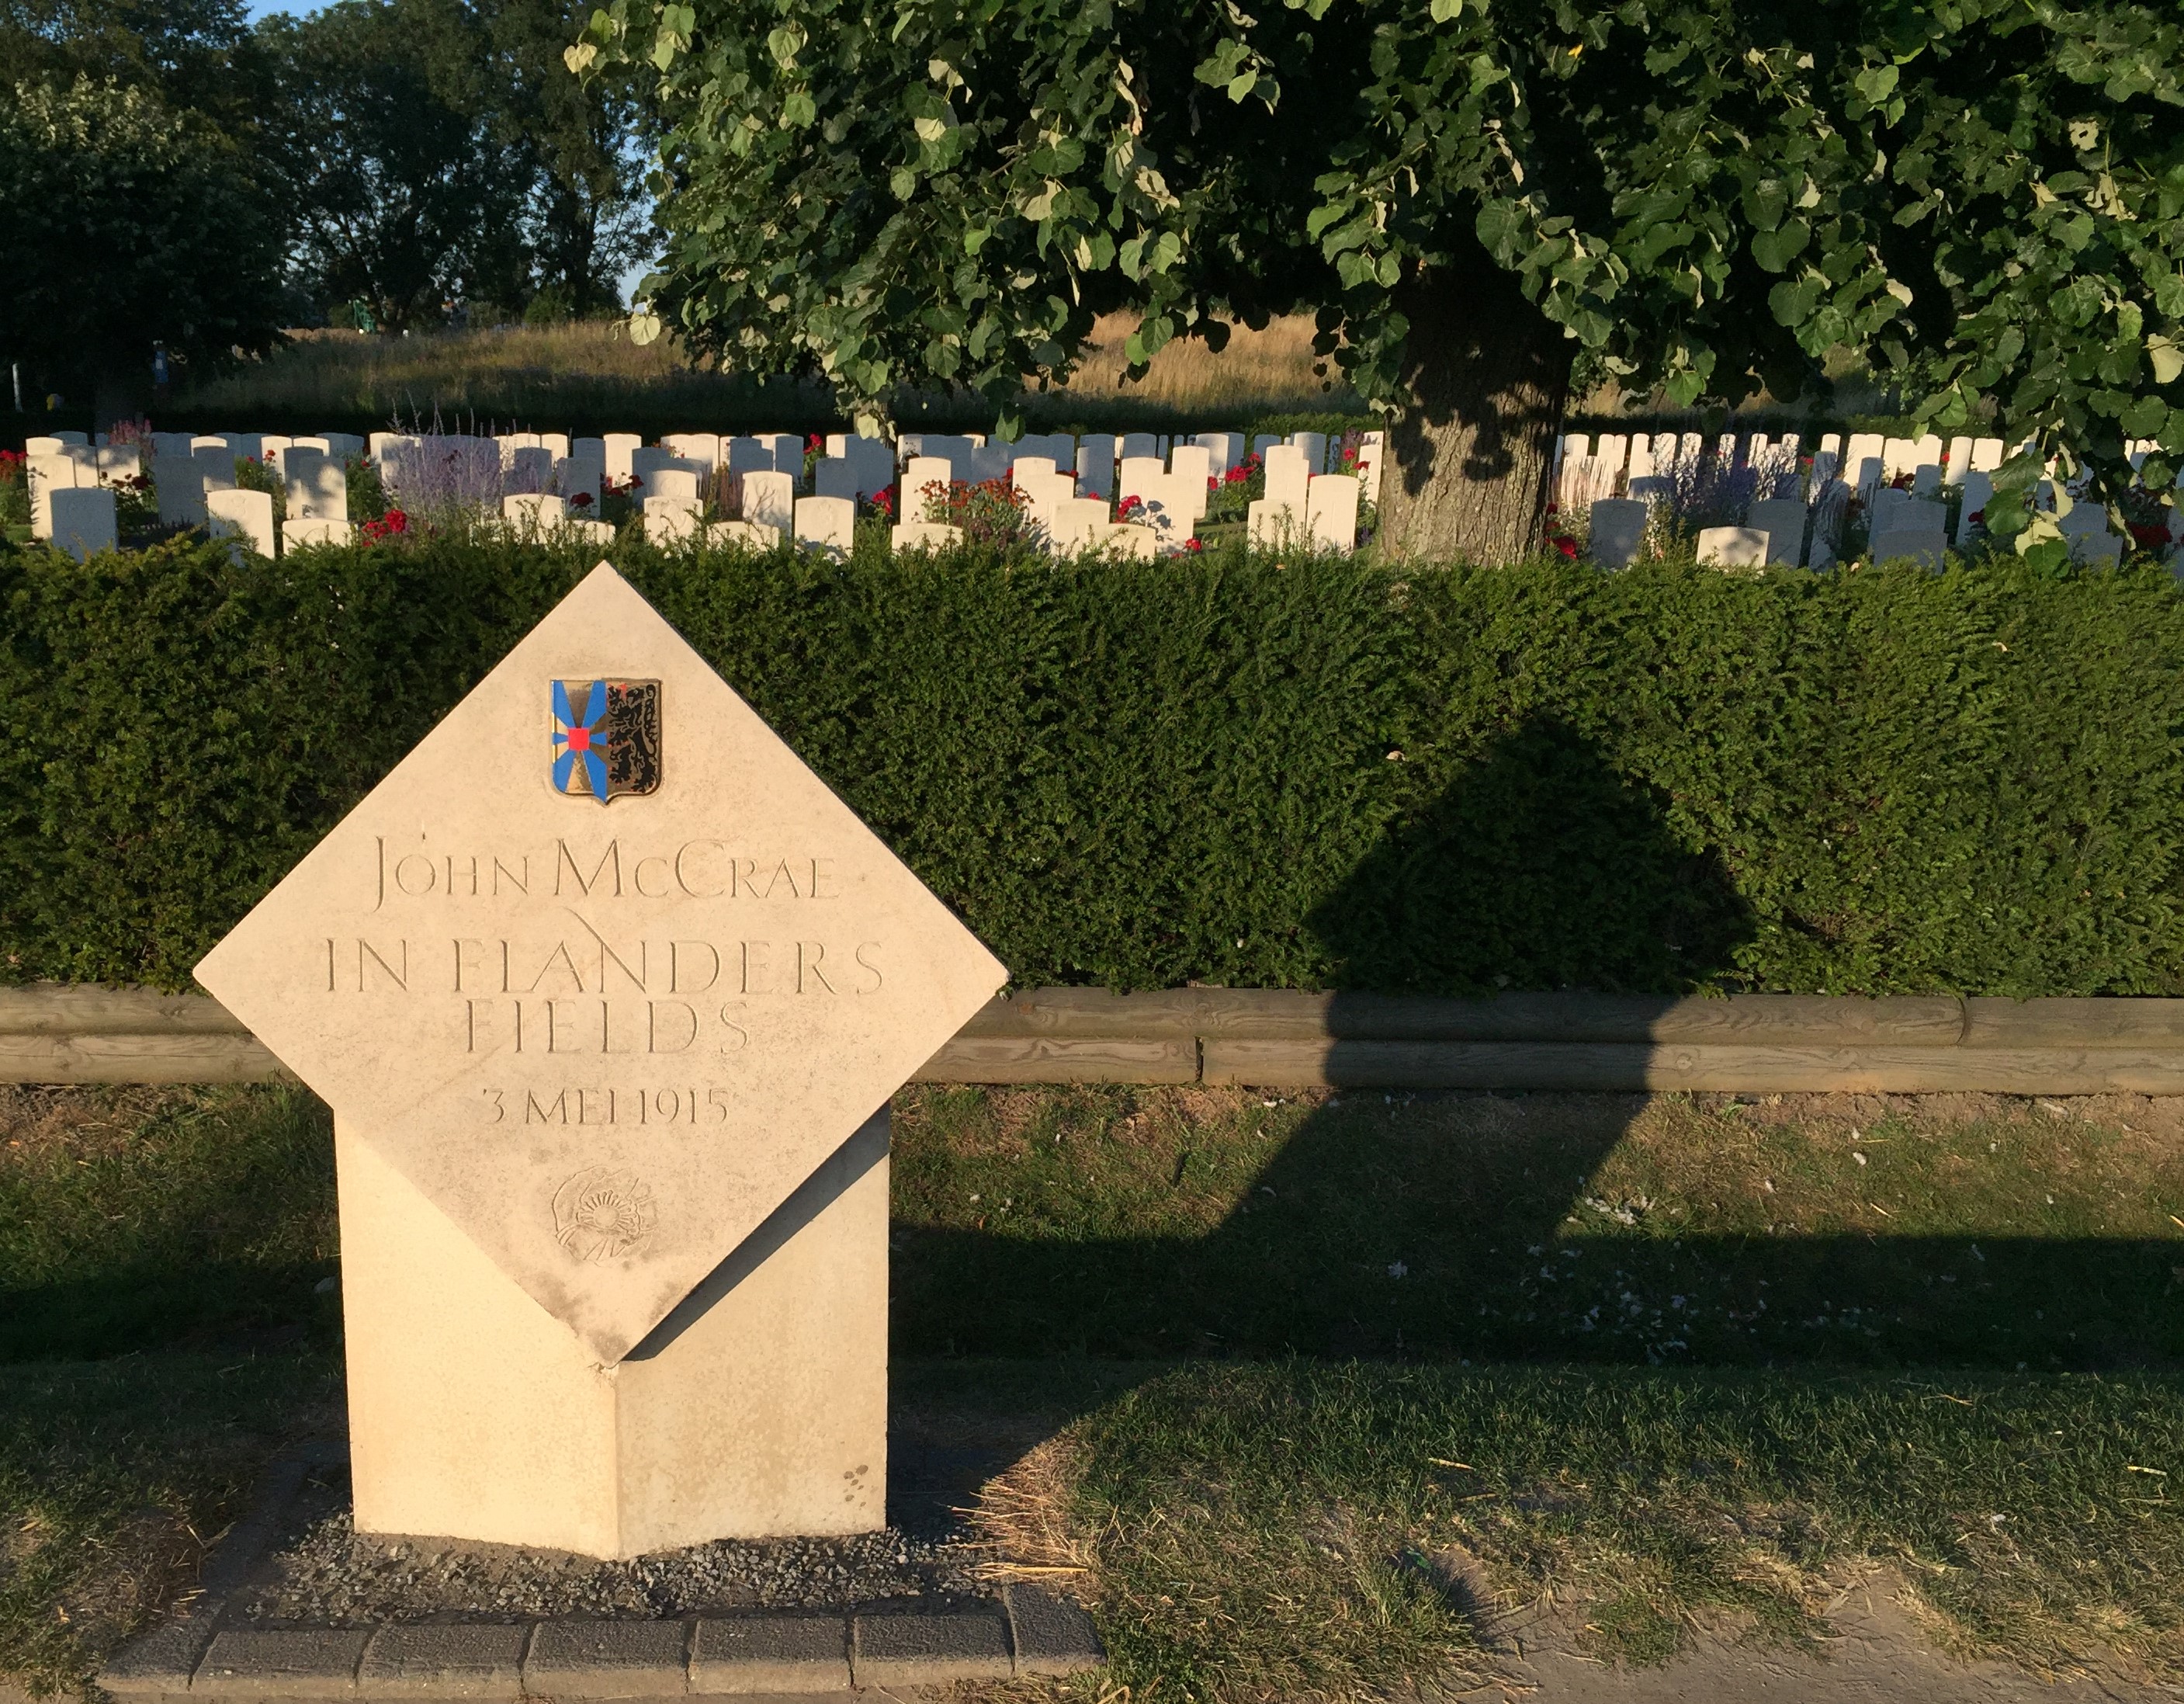 Il cimitero britannico nei pressi del John McCrae Site, il luogo dove il medico canadese ha scritto la poesia In Flanders fields